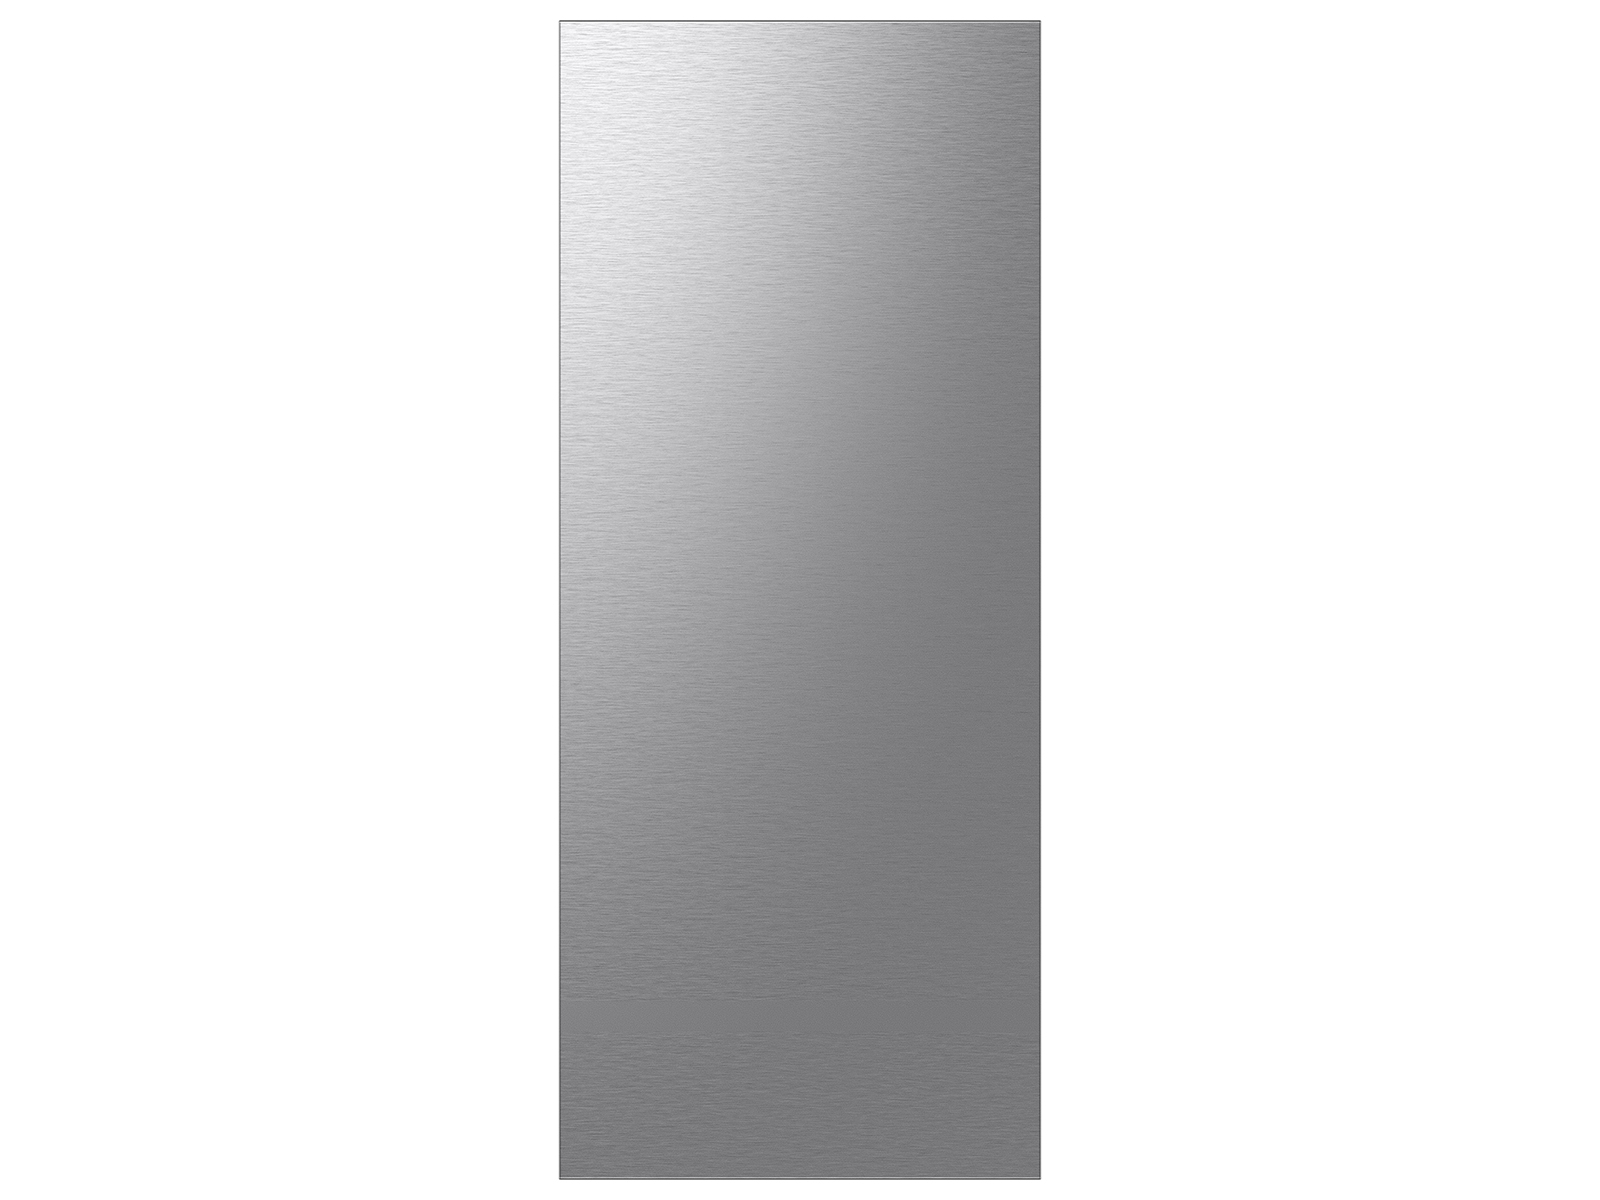 Photos - Fridge Samsung Bespoke 3-Door French Door Refrigerator Panel in Stainless Steel  